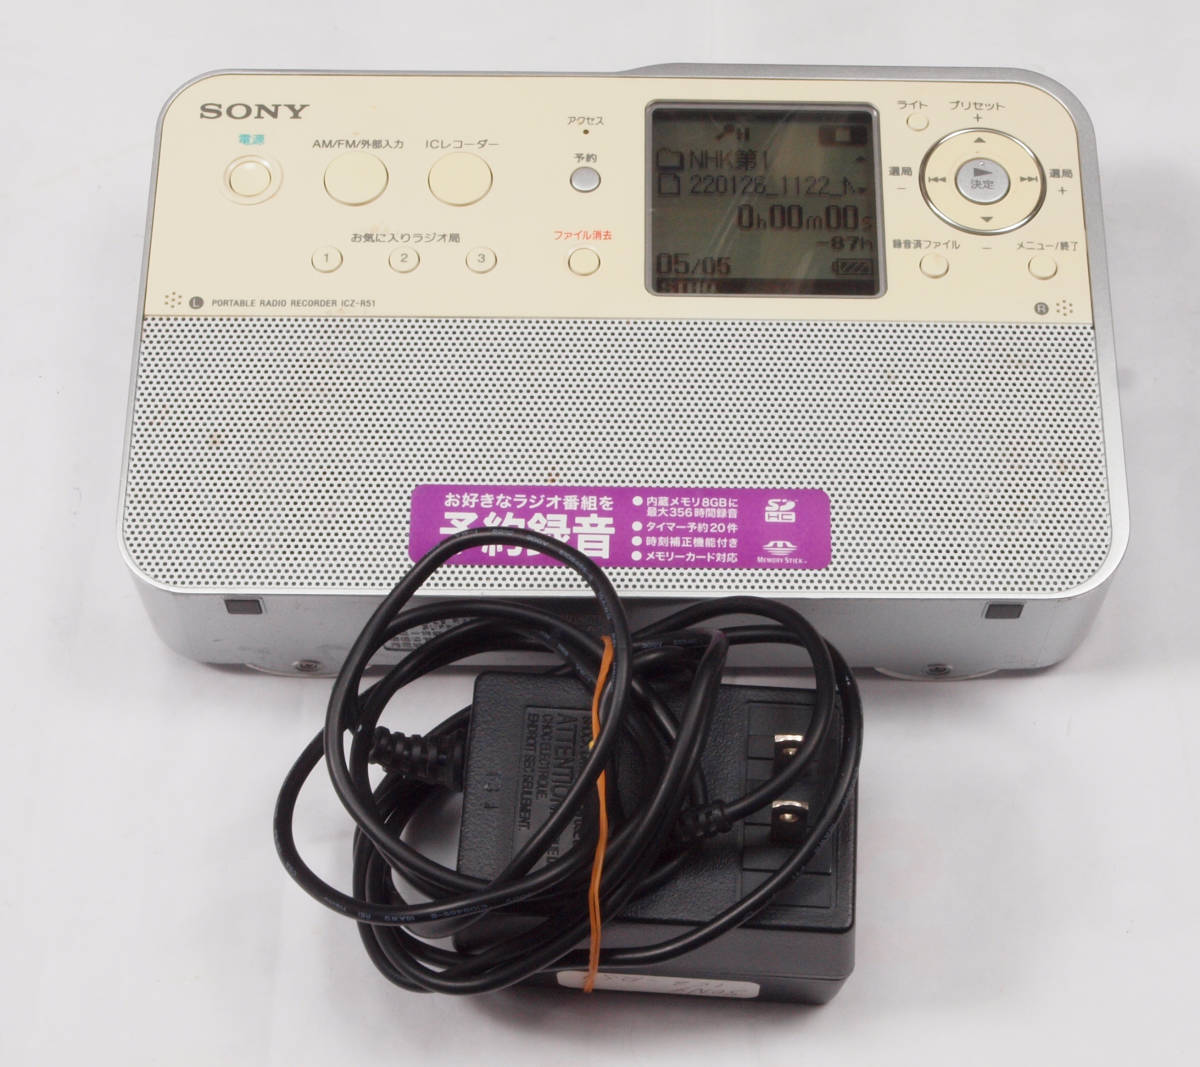 0円 セール 登場から人気沸騰 Sony ポータブルラジオレコーダー